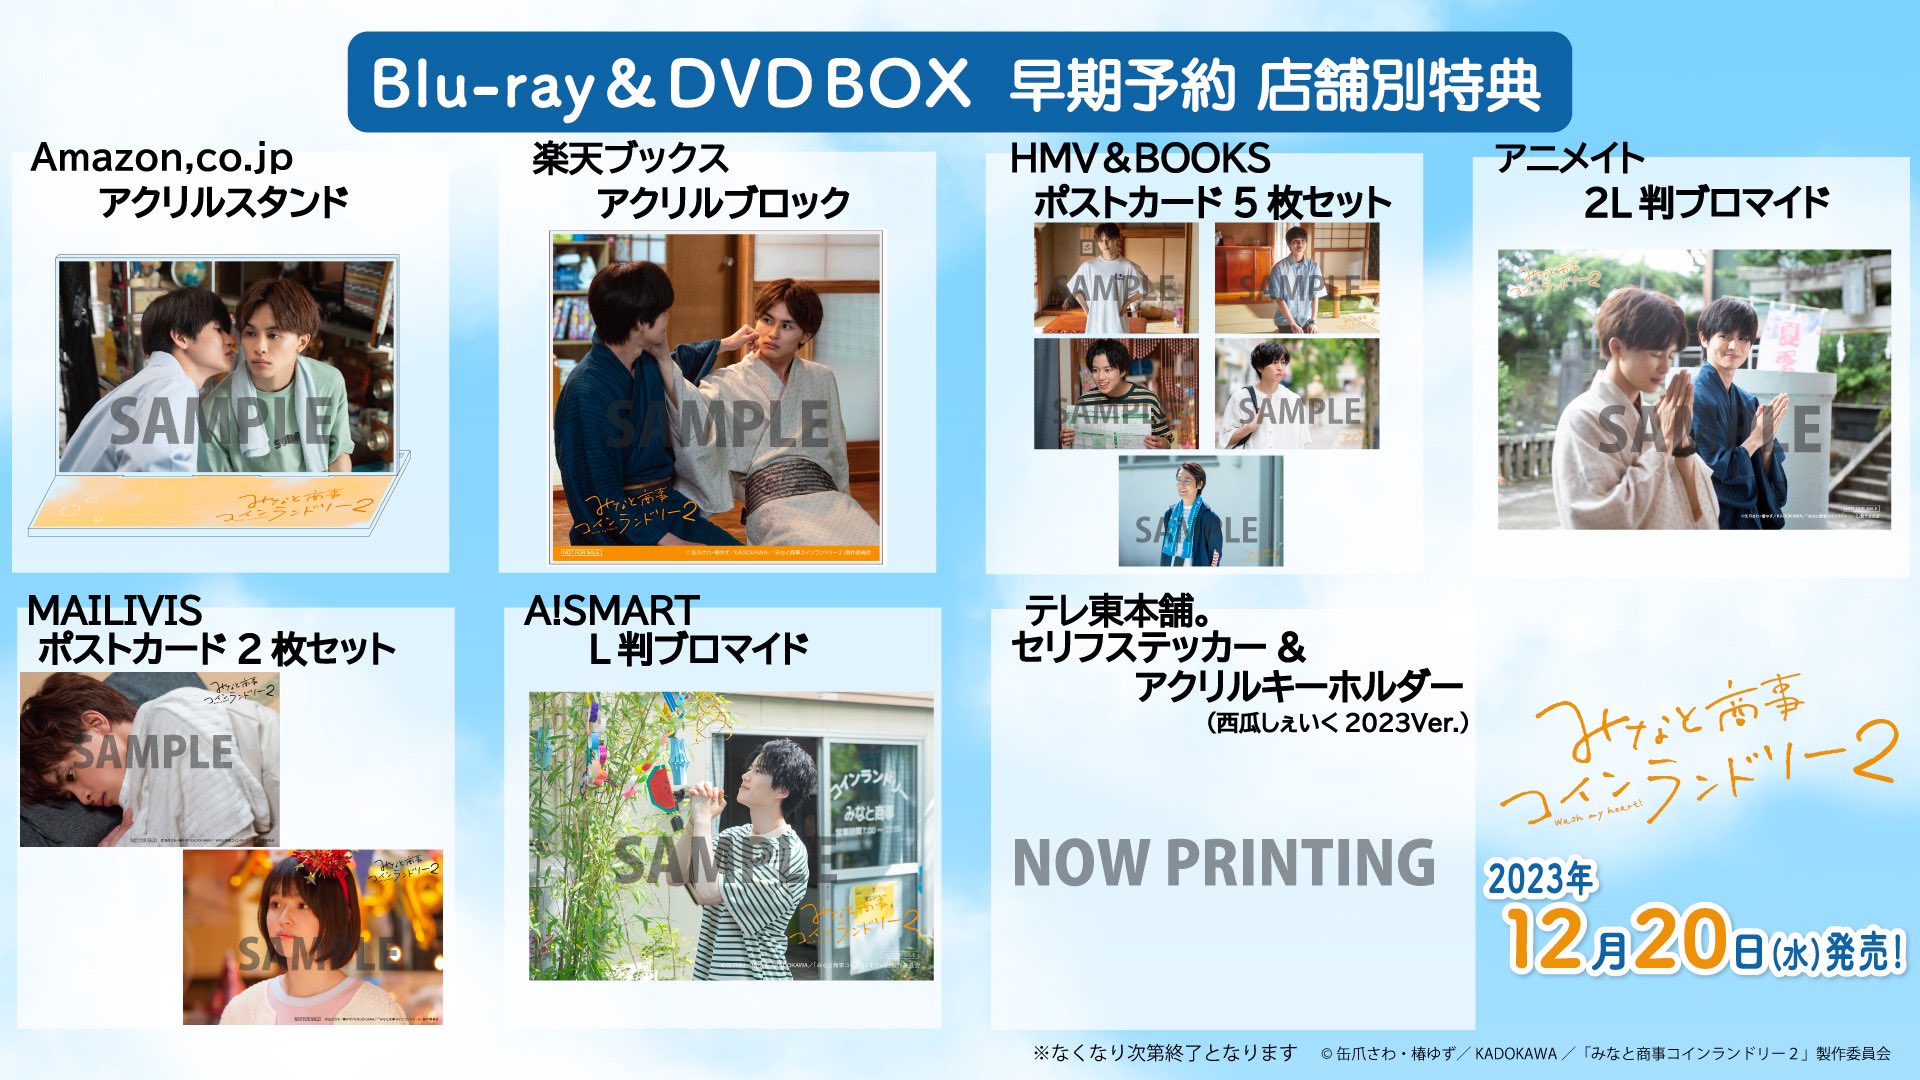 みなと商事コインランドリーみなと商事コインランドリー2 Blu-ray BOX